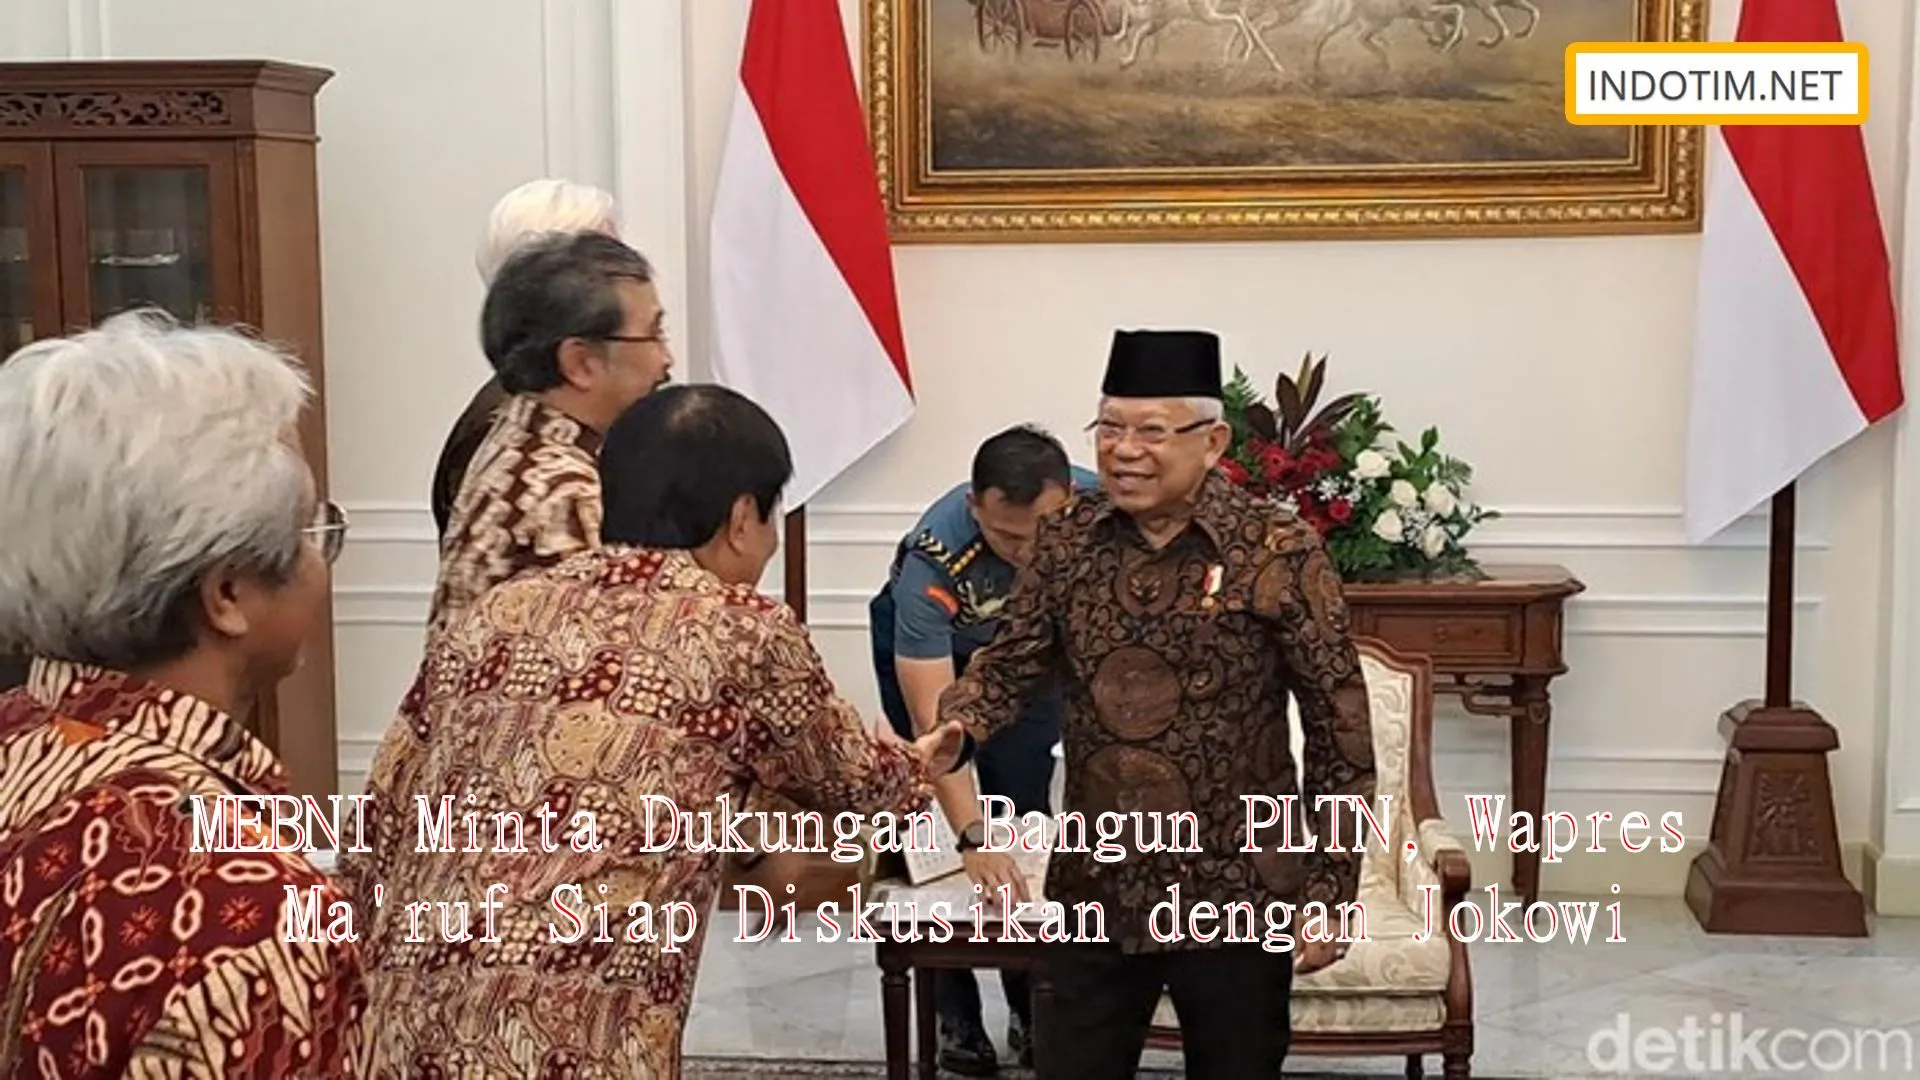 MEBNI Minta Dukungan Bangun PLTN, Wapres Ma'ruf Siap Diskusikan dengan Jokowi